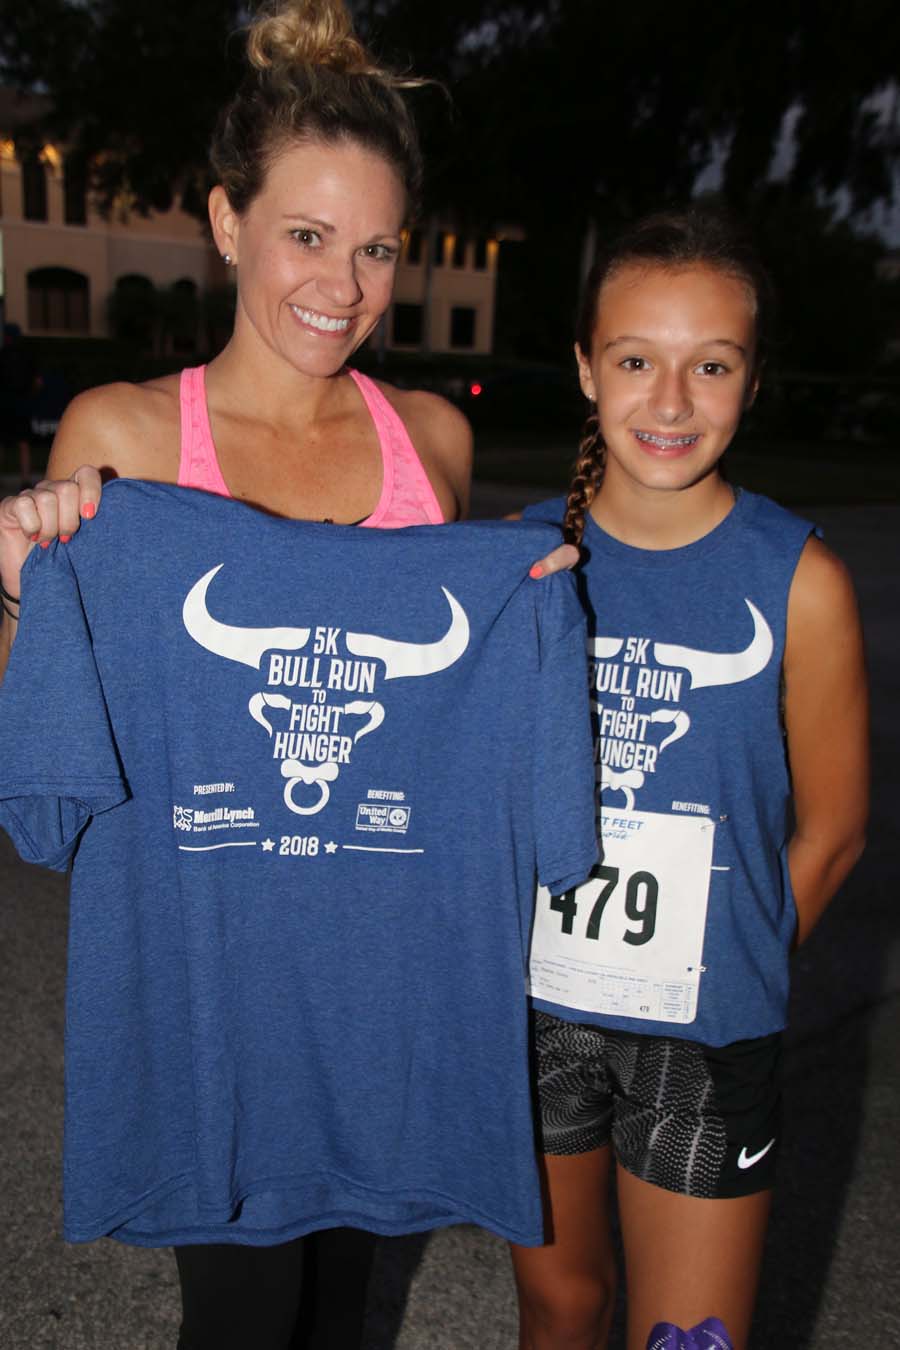 Runners holding Bull Run shirts